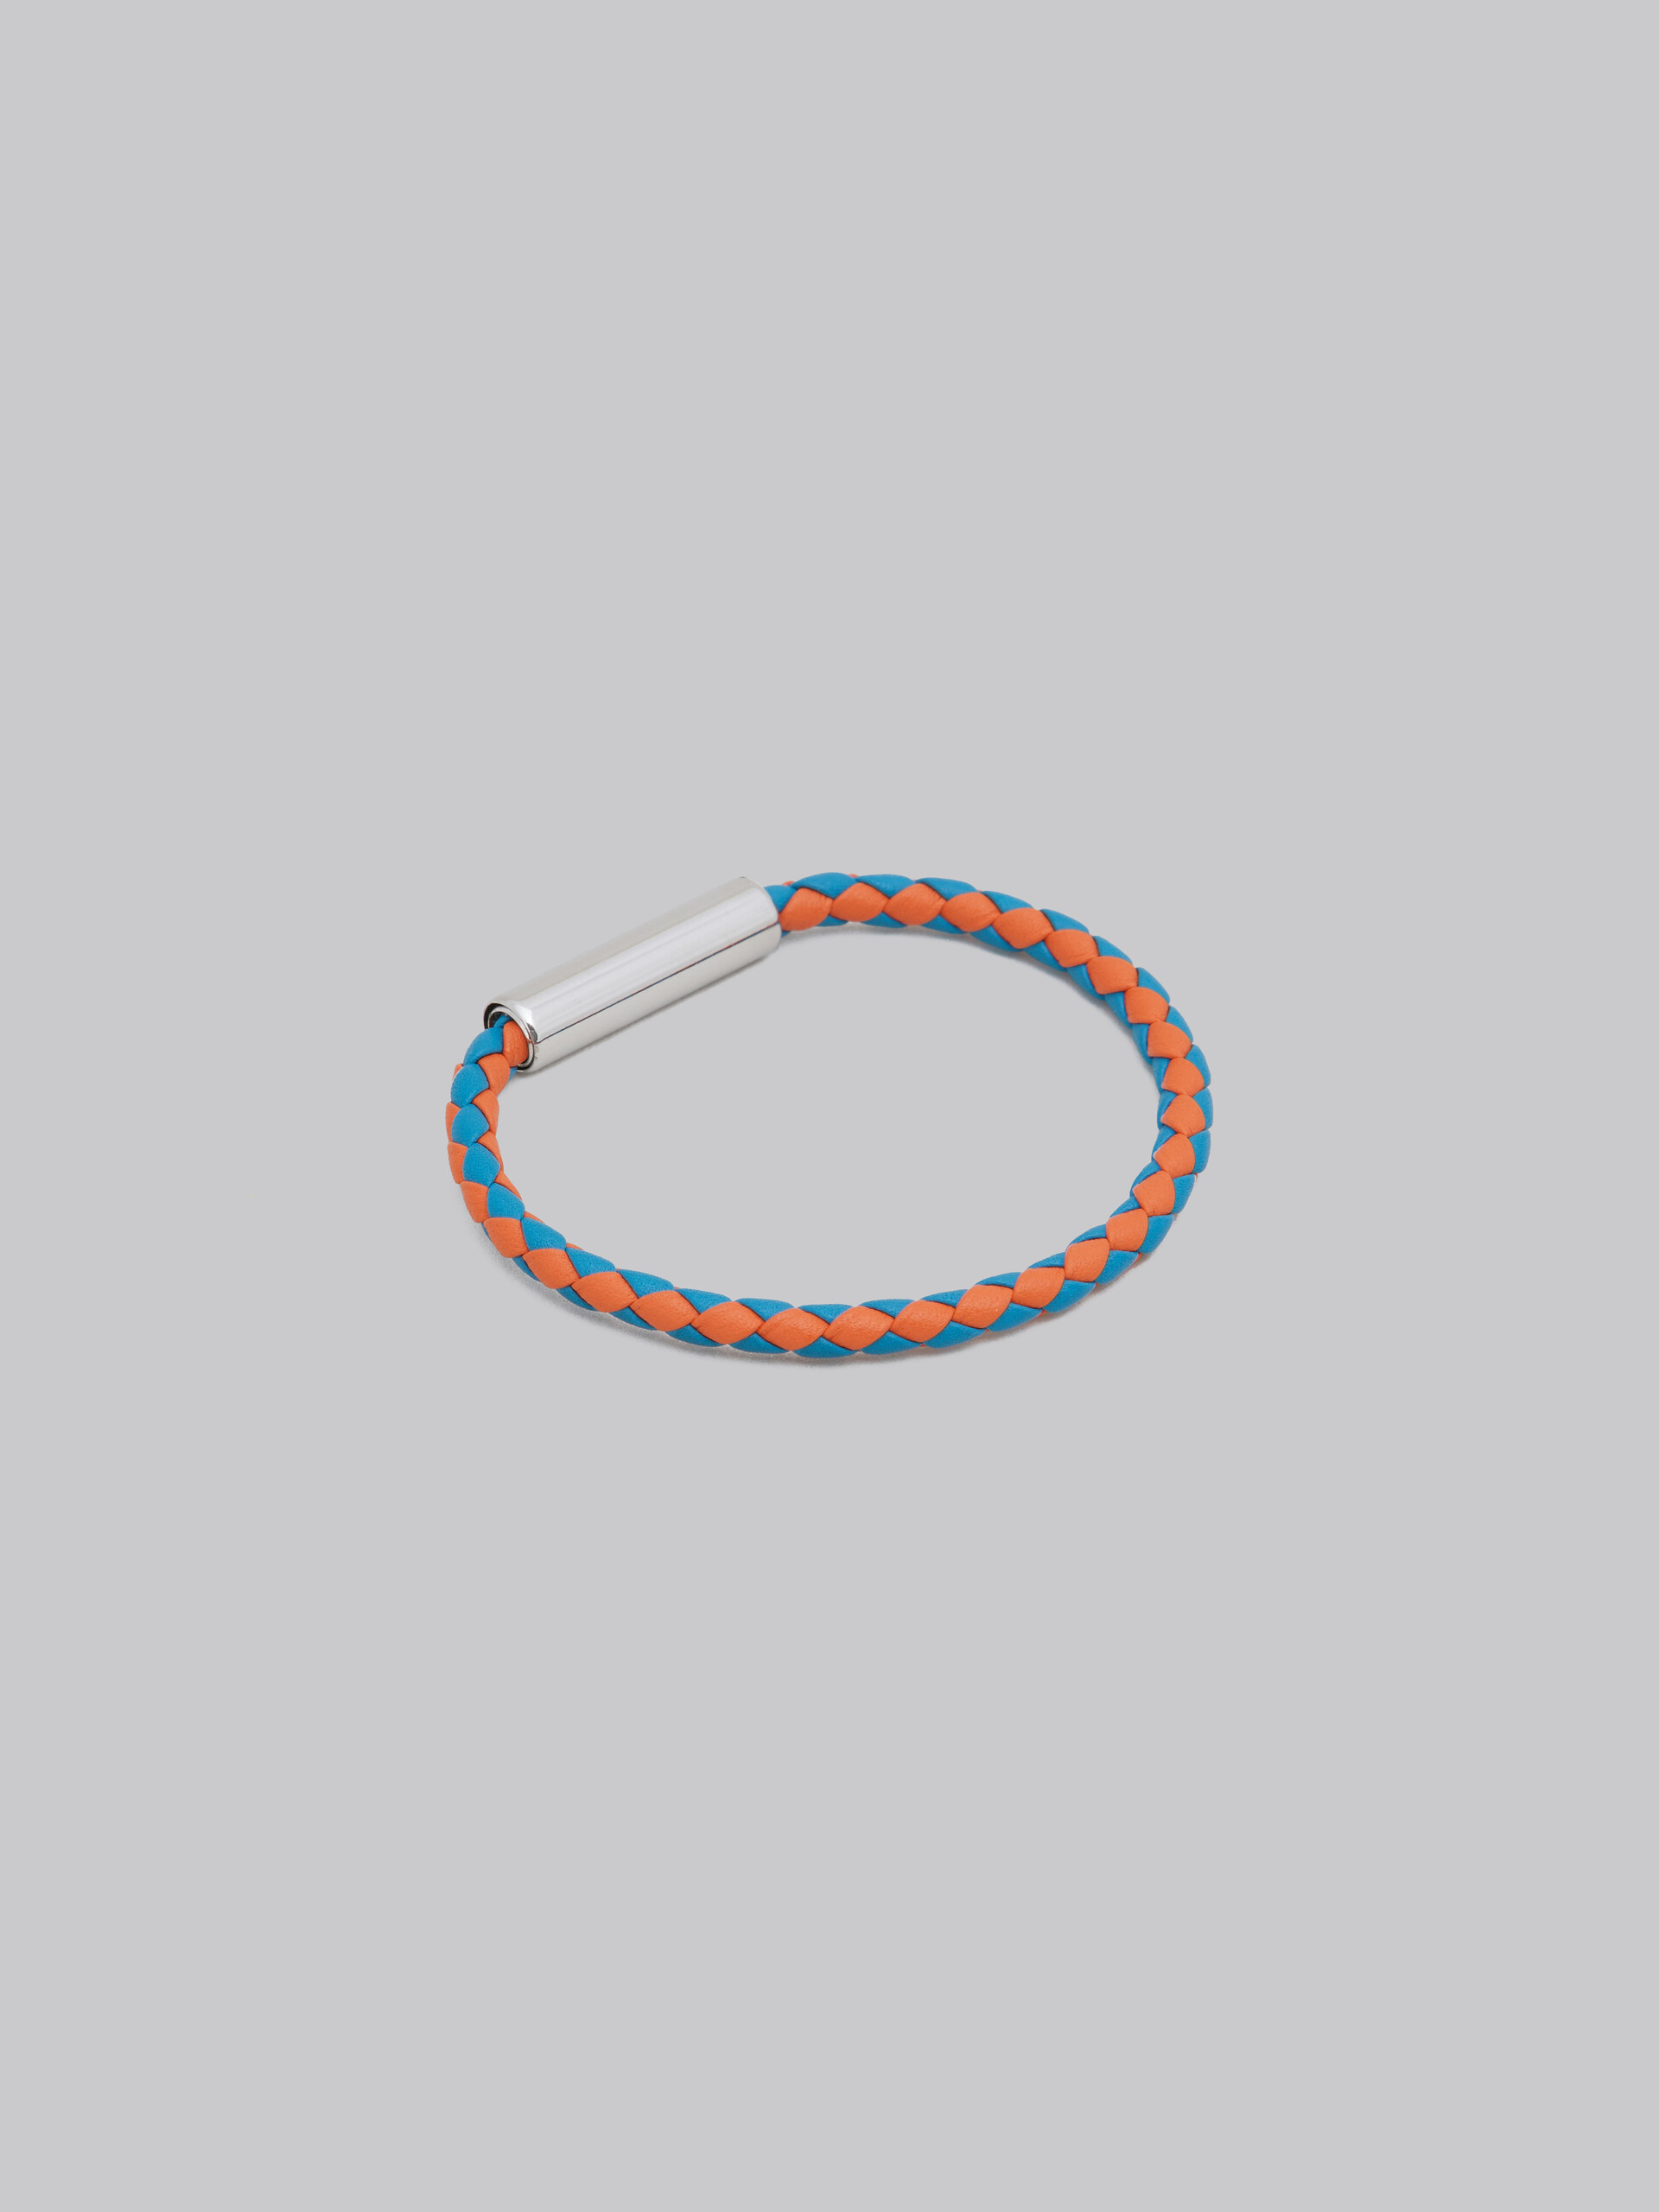 Turquoise and orange woven leather bracelet - Bracelets - Image 2